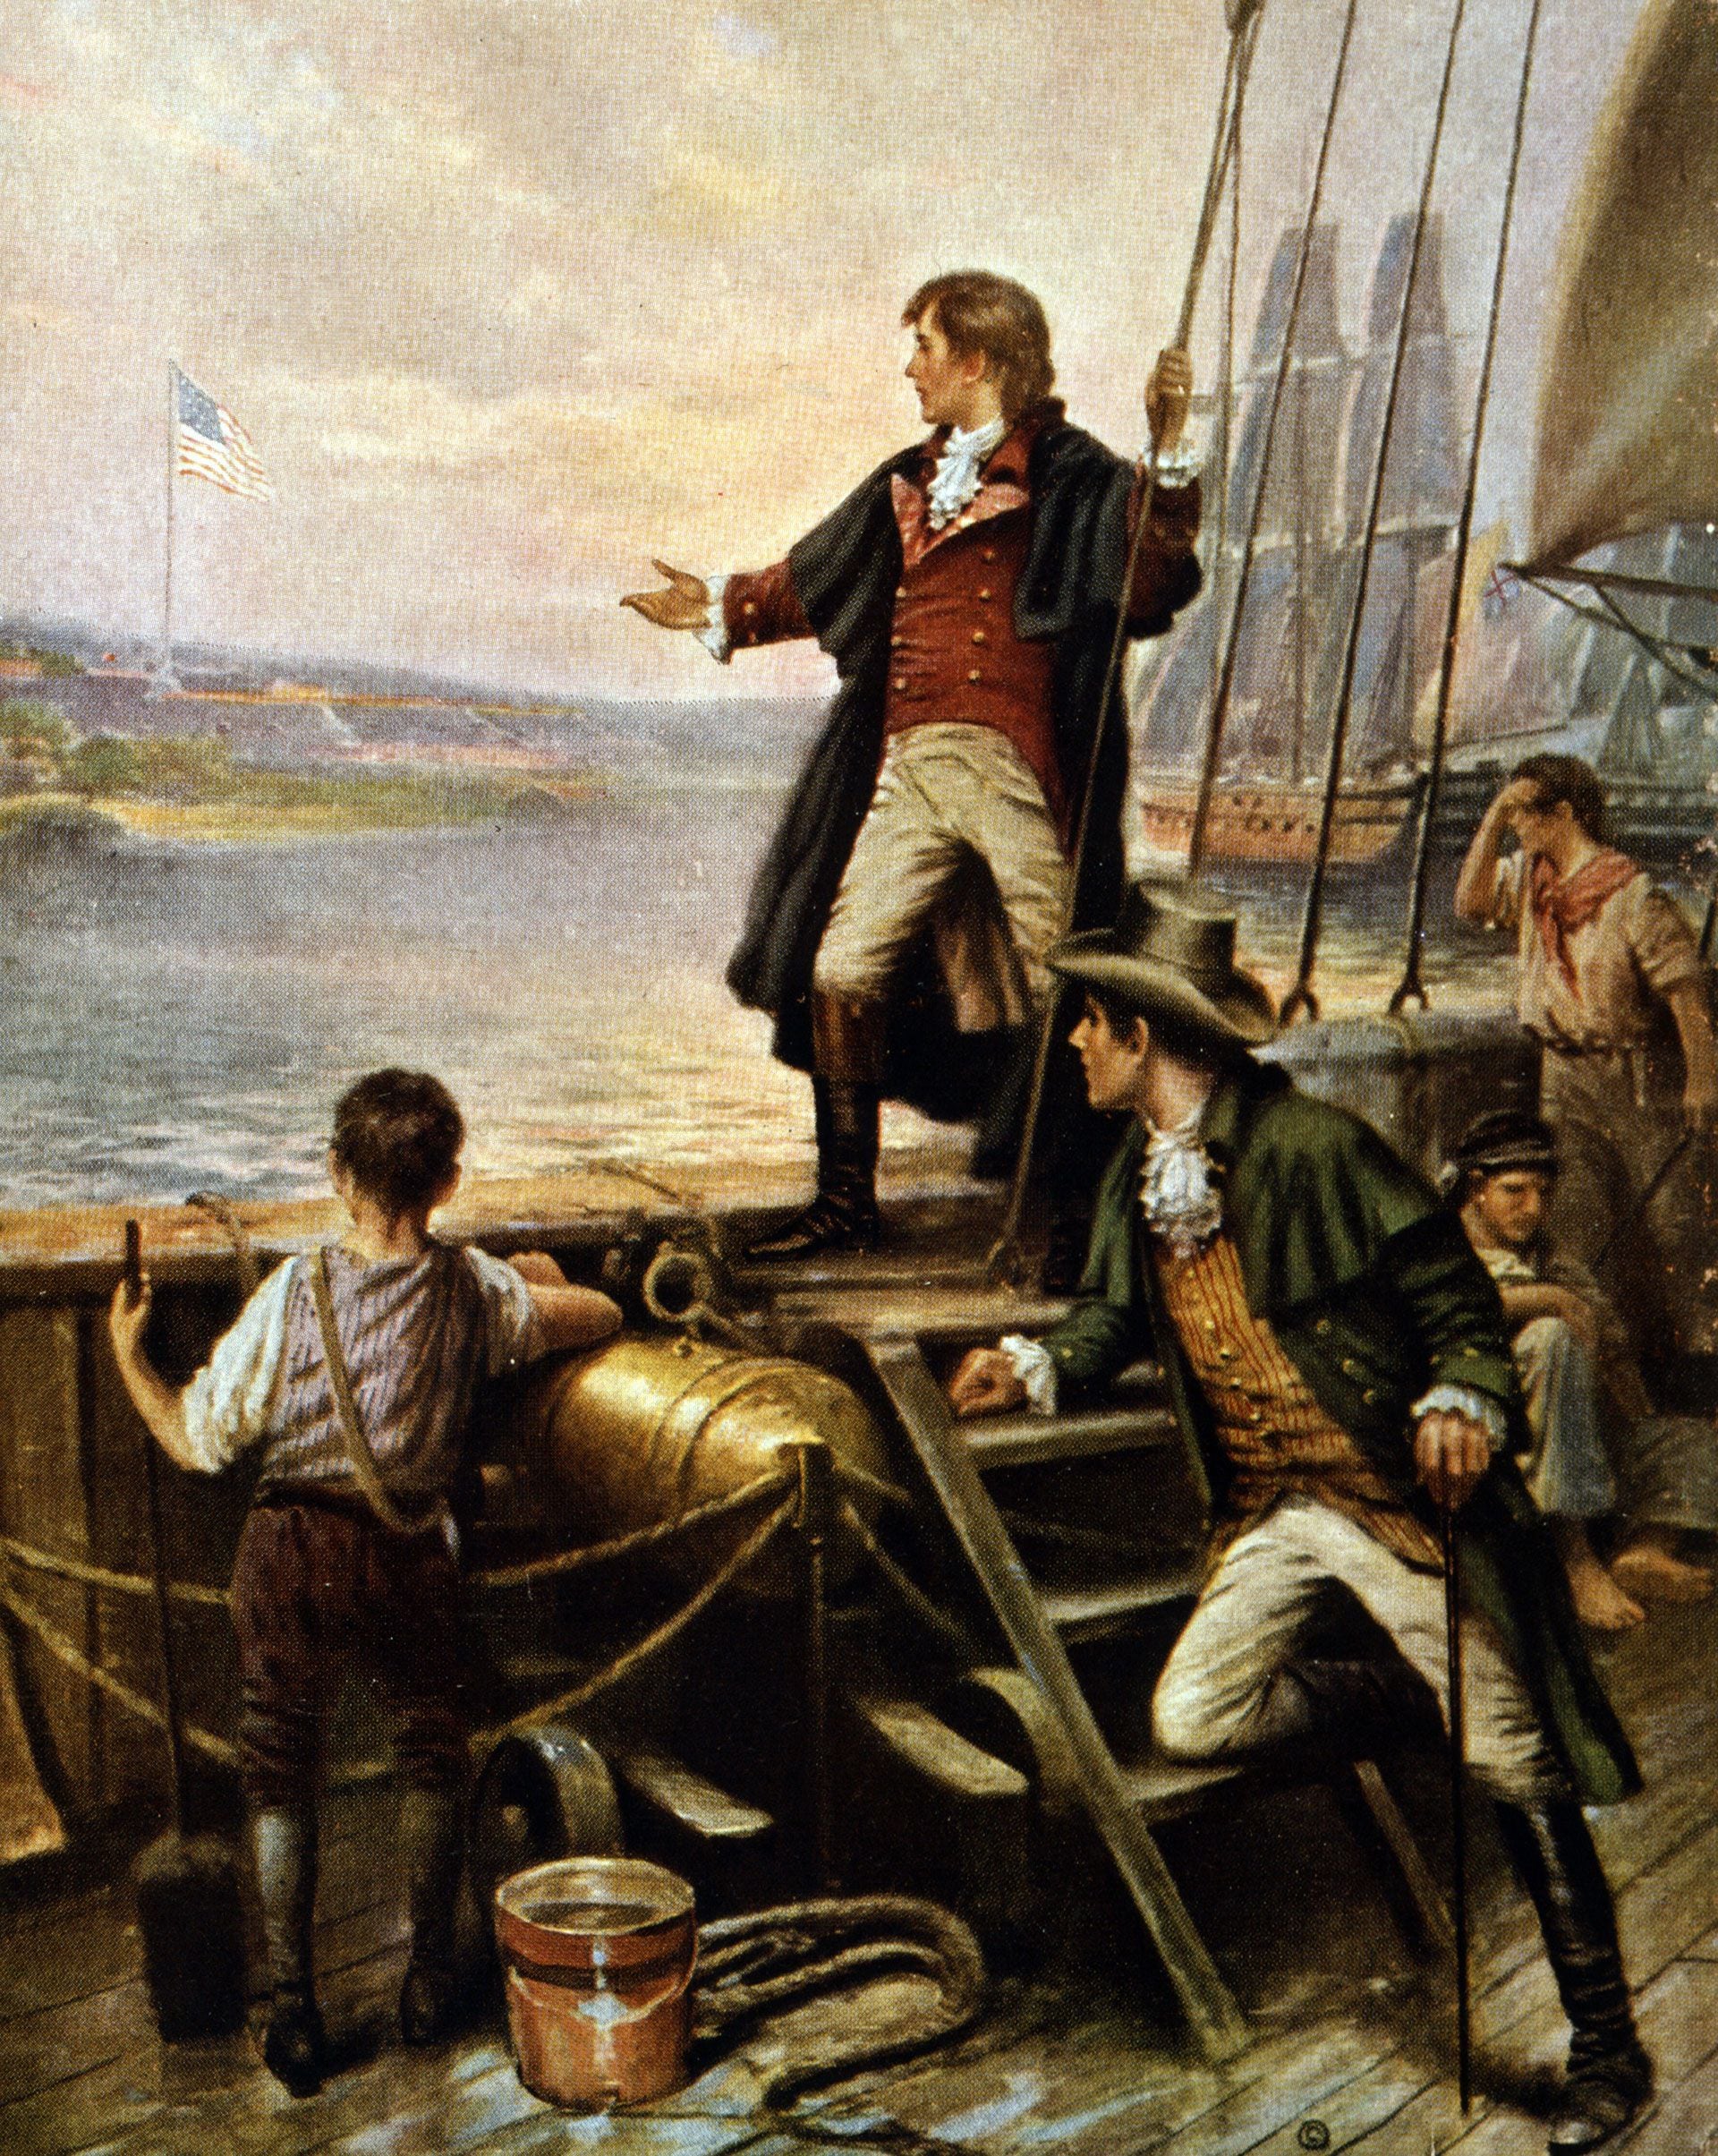 La batalla de Baltimore en la guerra entre los Estados Unidos y Gran Bretaña, que inspiró la creación de Star-Spangled-Banner, el himno norteamericano (Grosby)